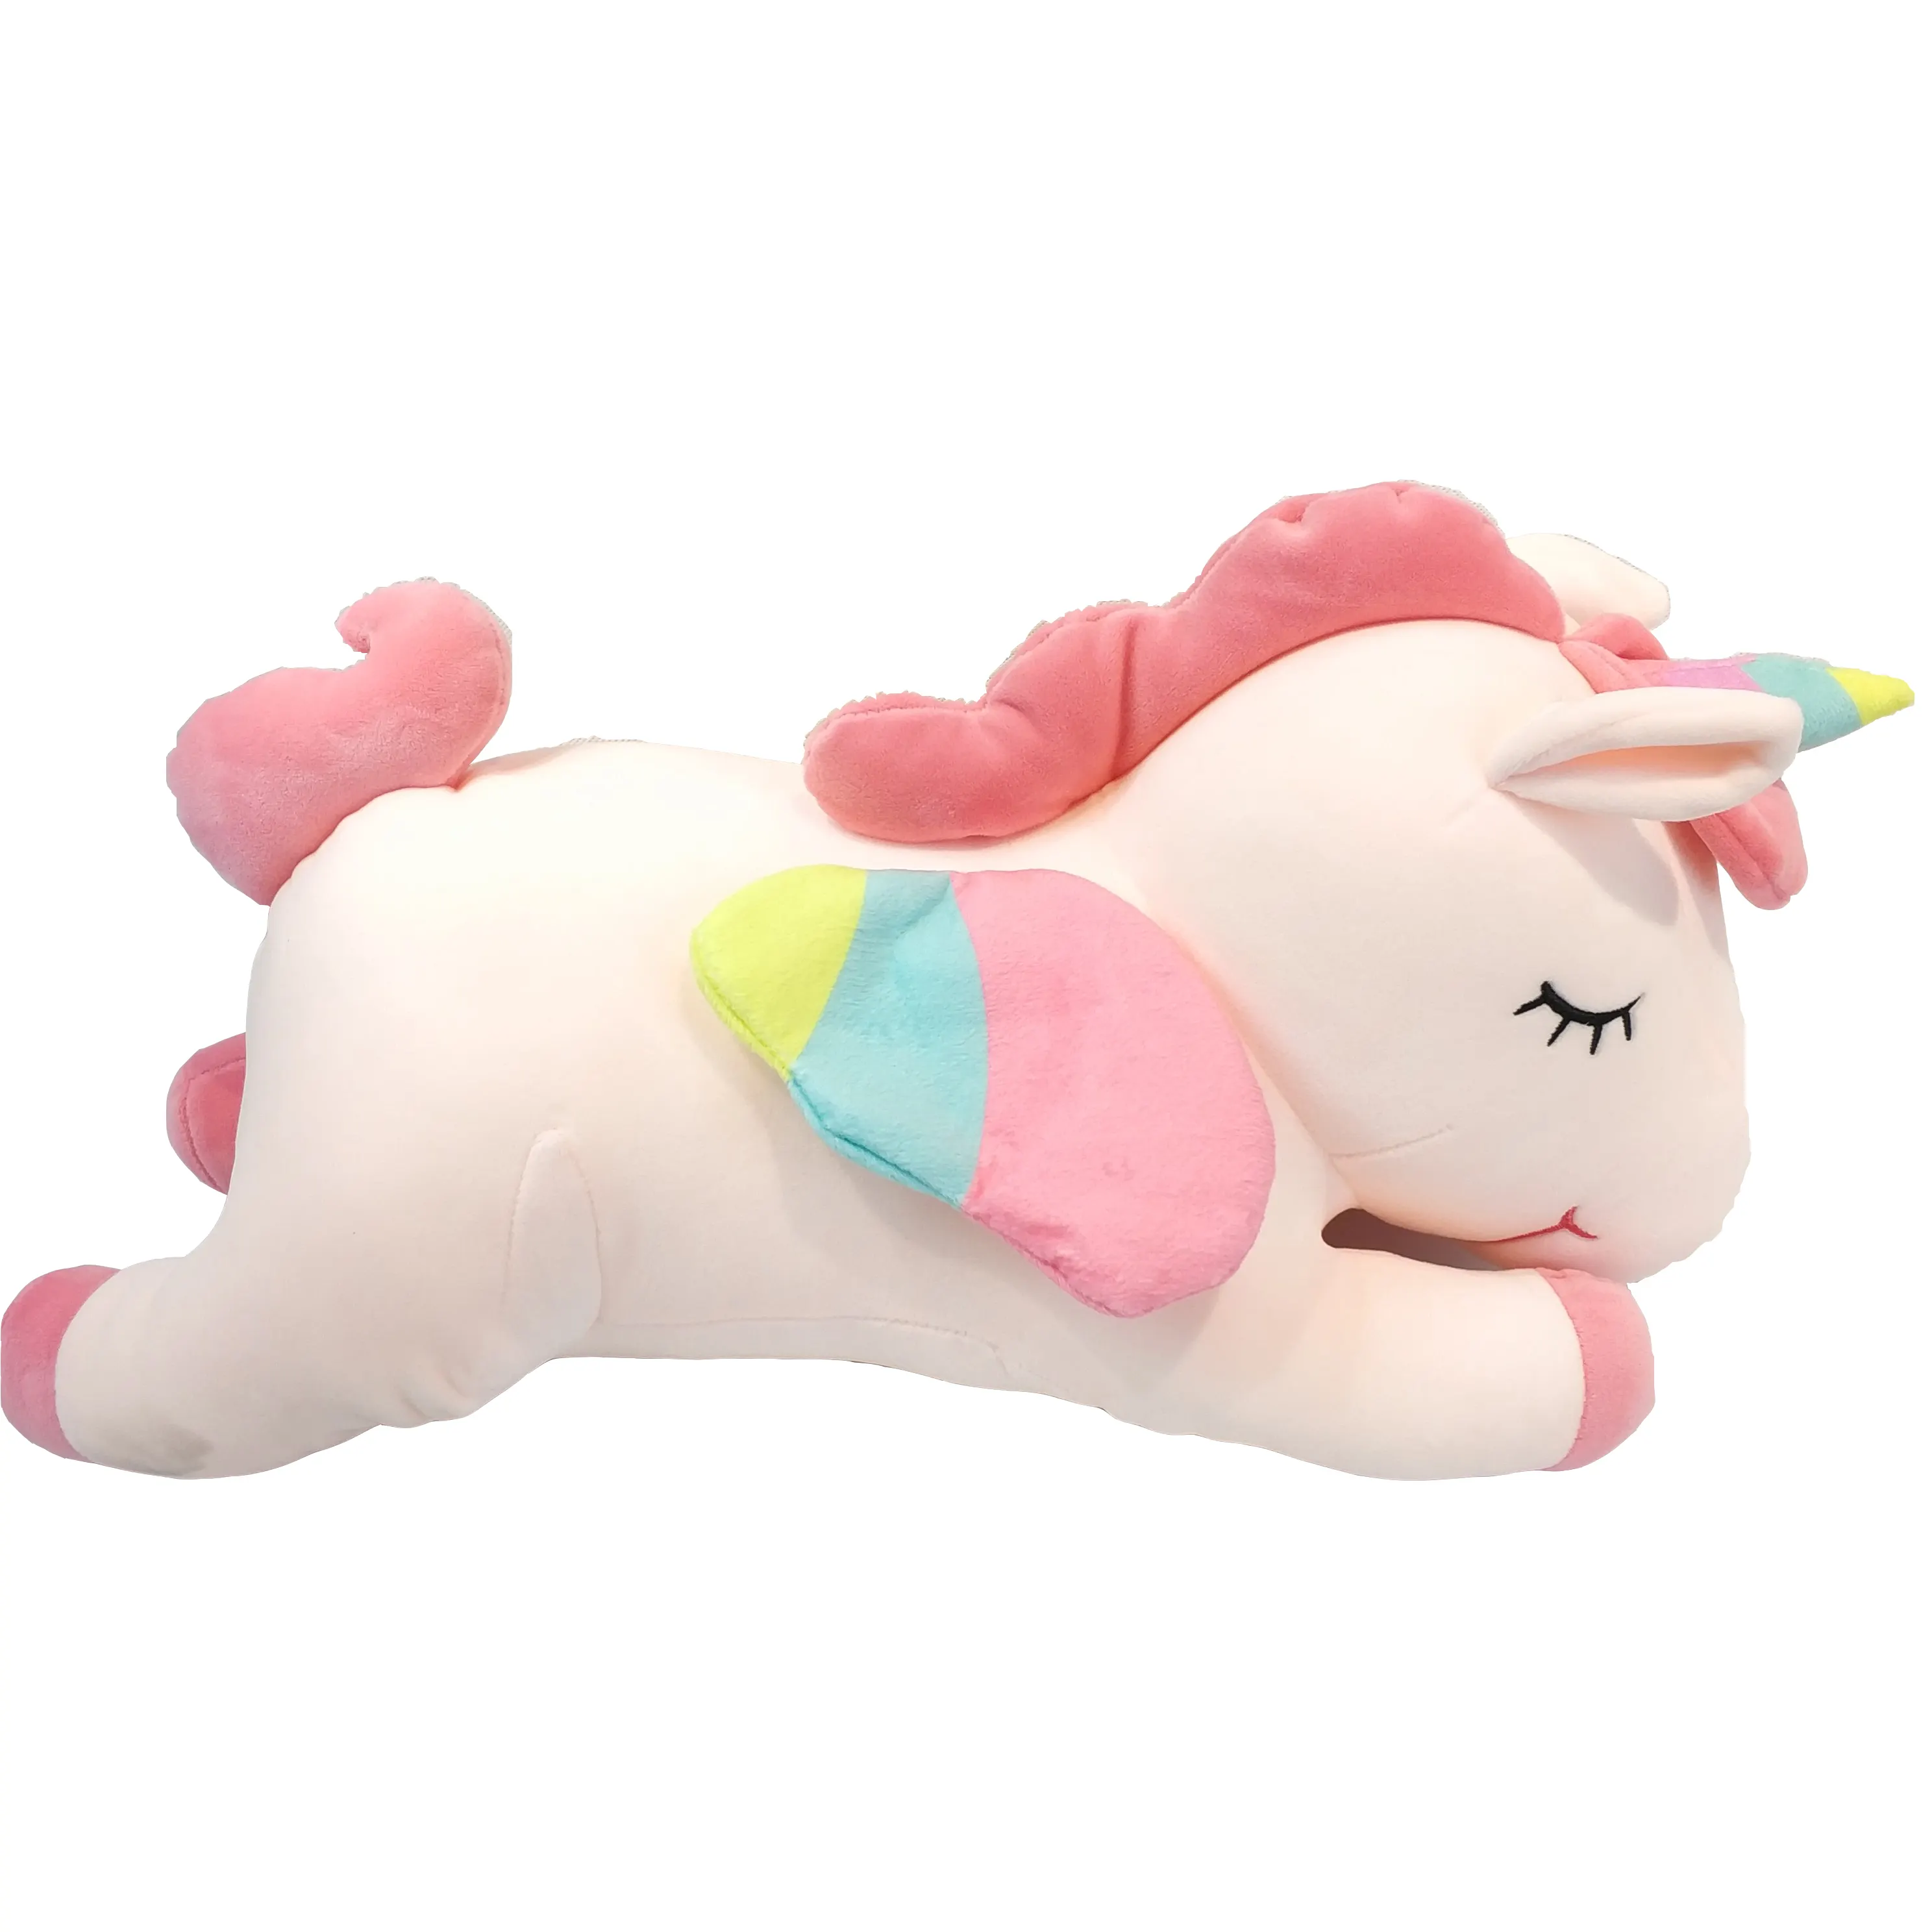 홈 소파 유니콘 박제 동물 슈퍼 부드러운 탄성 포옹 베개 핑크 유니콘 인형 장난감